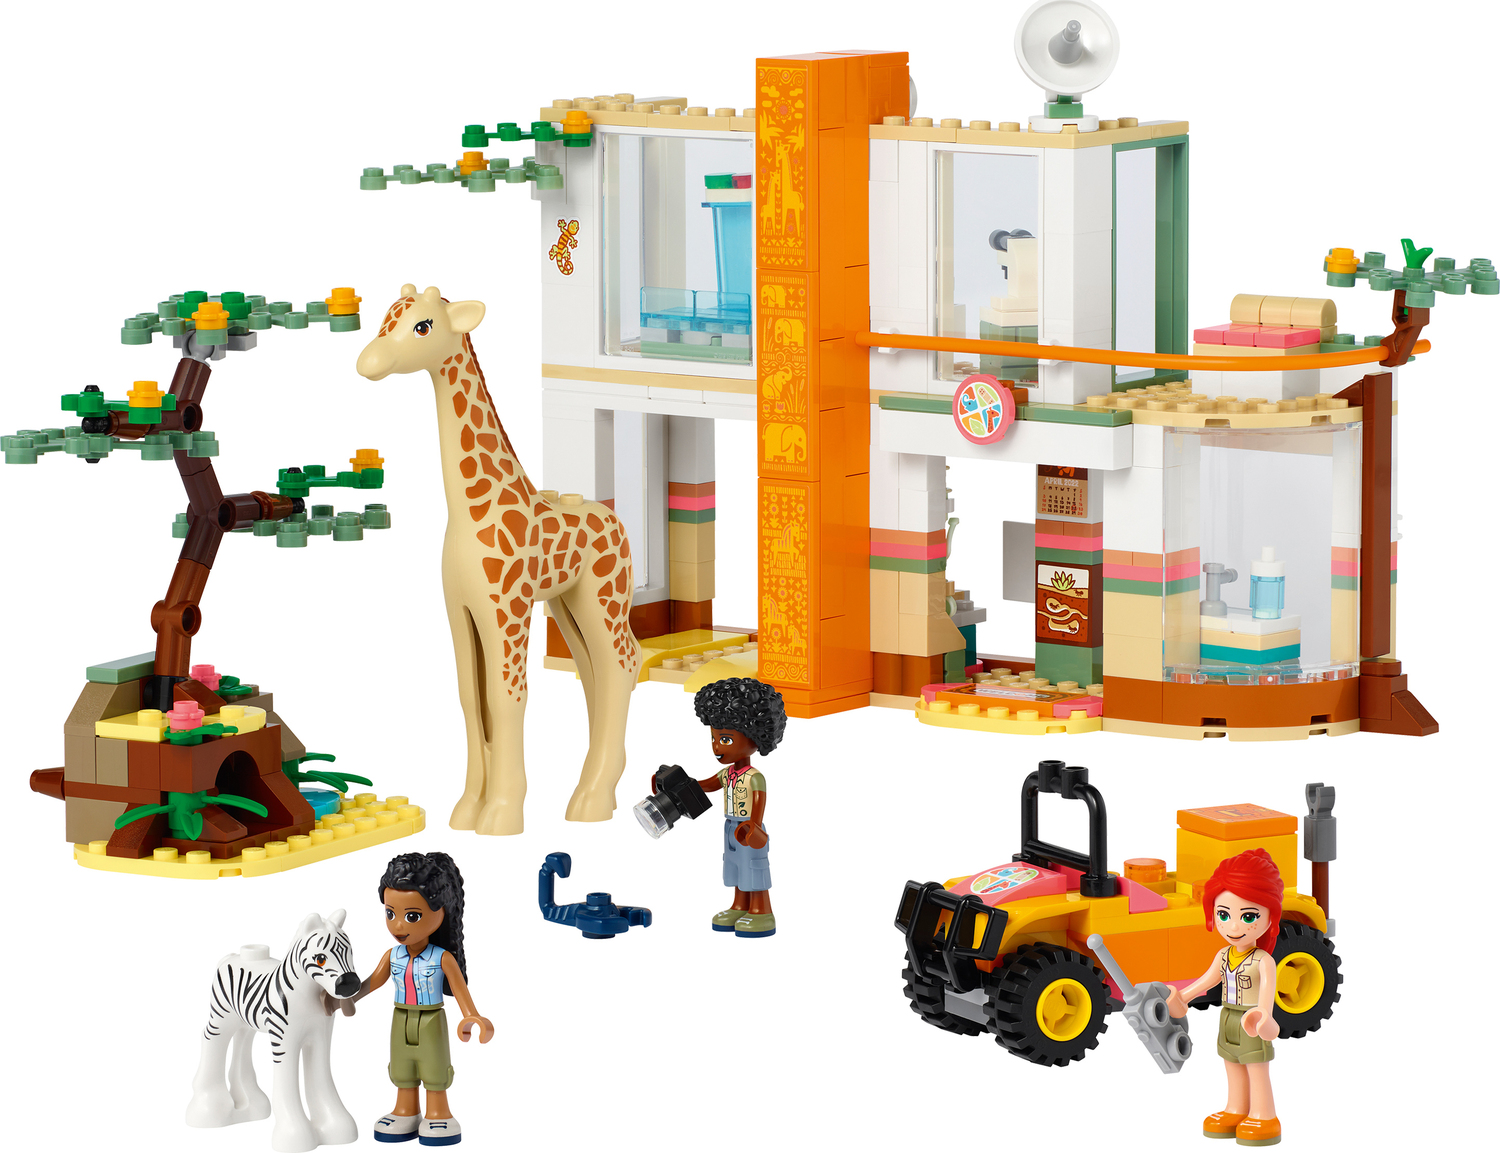 LEGO Friends Mia's Wildlife Rescue Animal Set